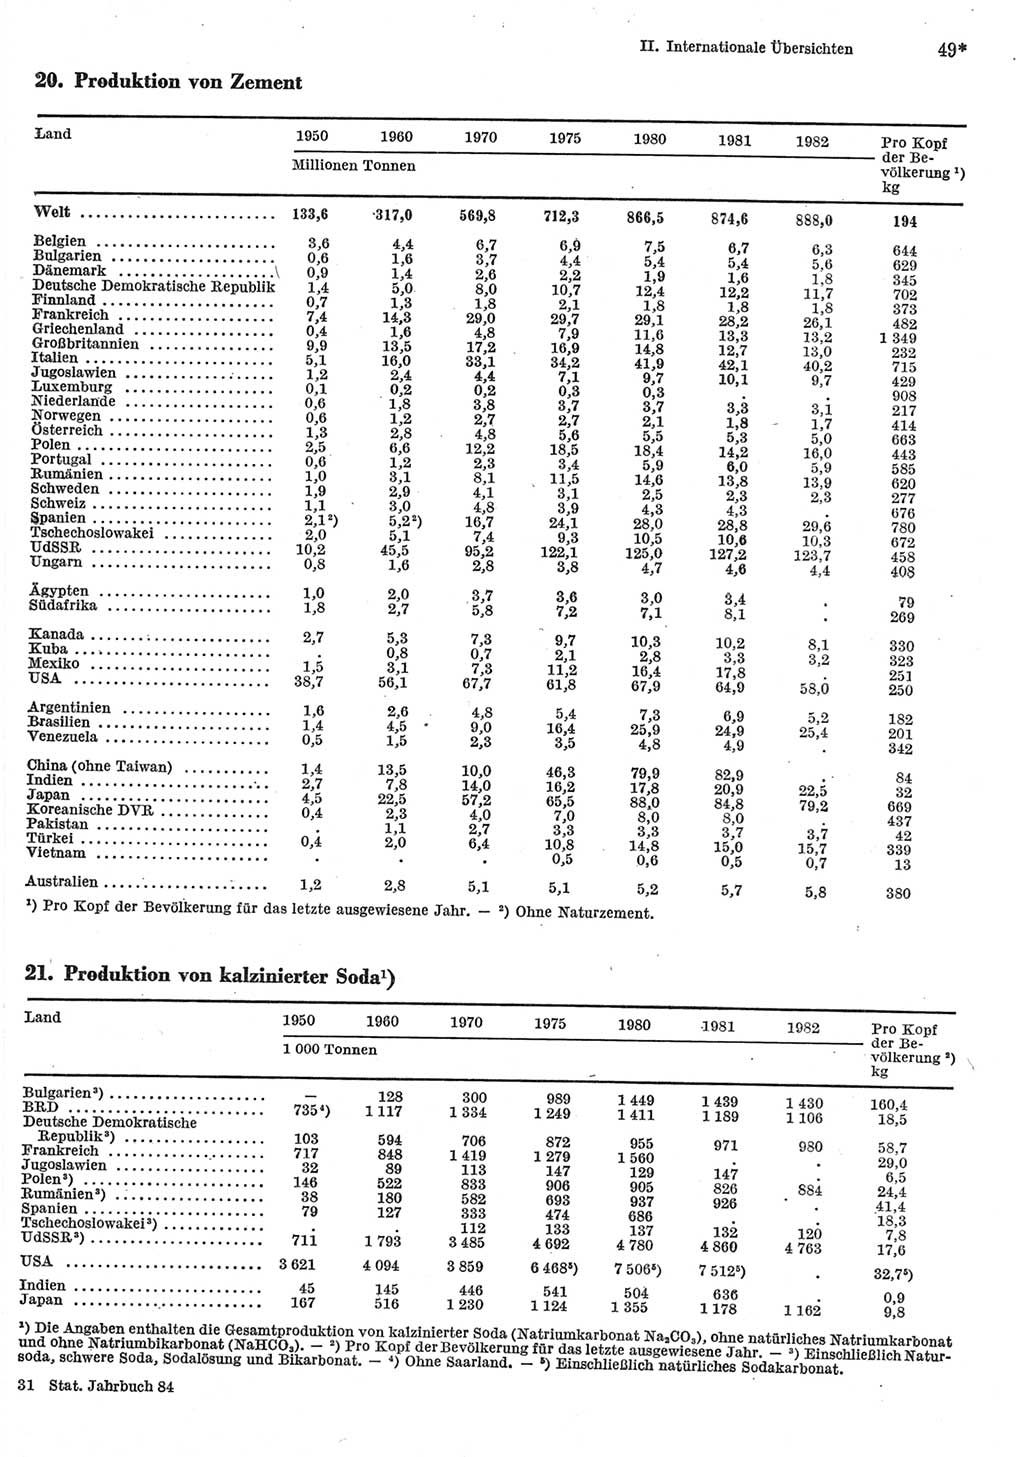 Statistisches Jahrbuch der Deutschen Demokratischen Republik (DDR) 1984, Seite 49 (Stat. Jb. DDR 1984, S. 49)